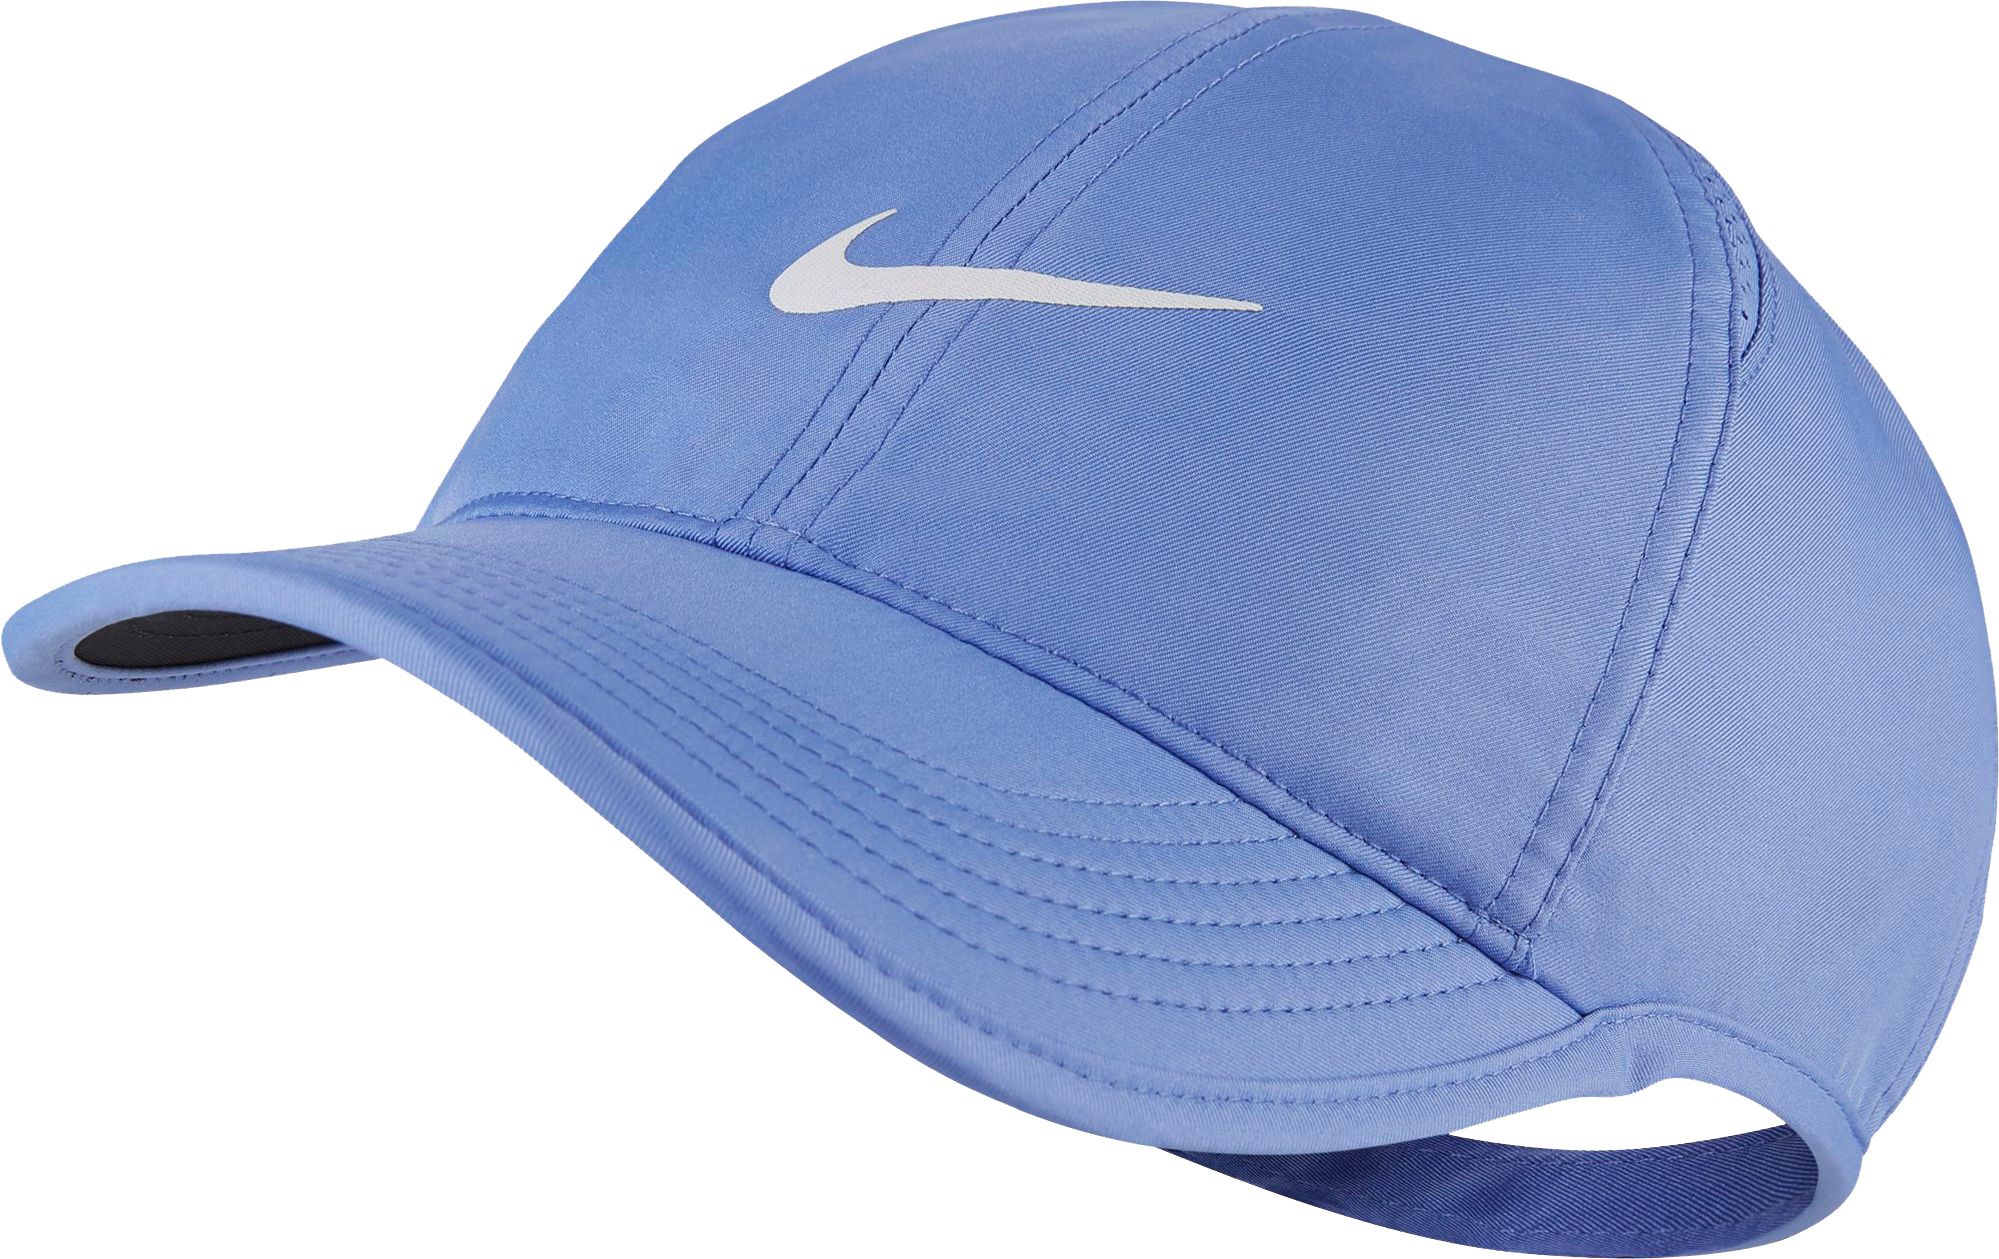 nike women's tennis hat